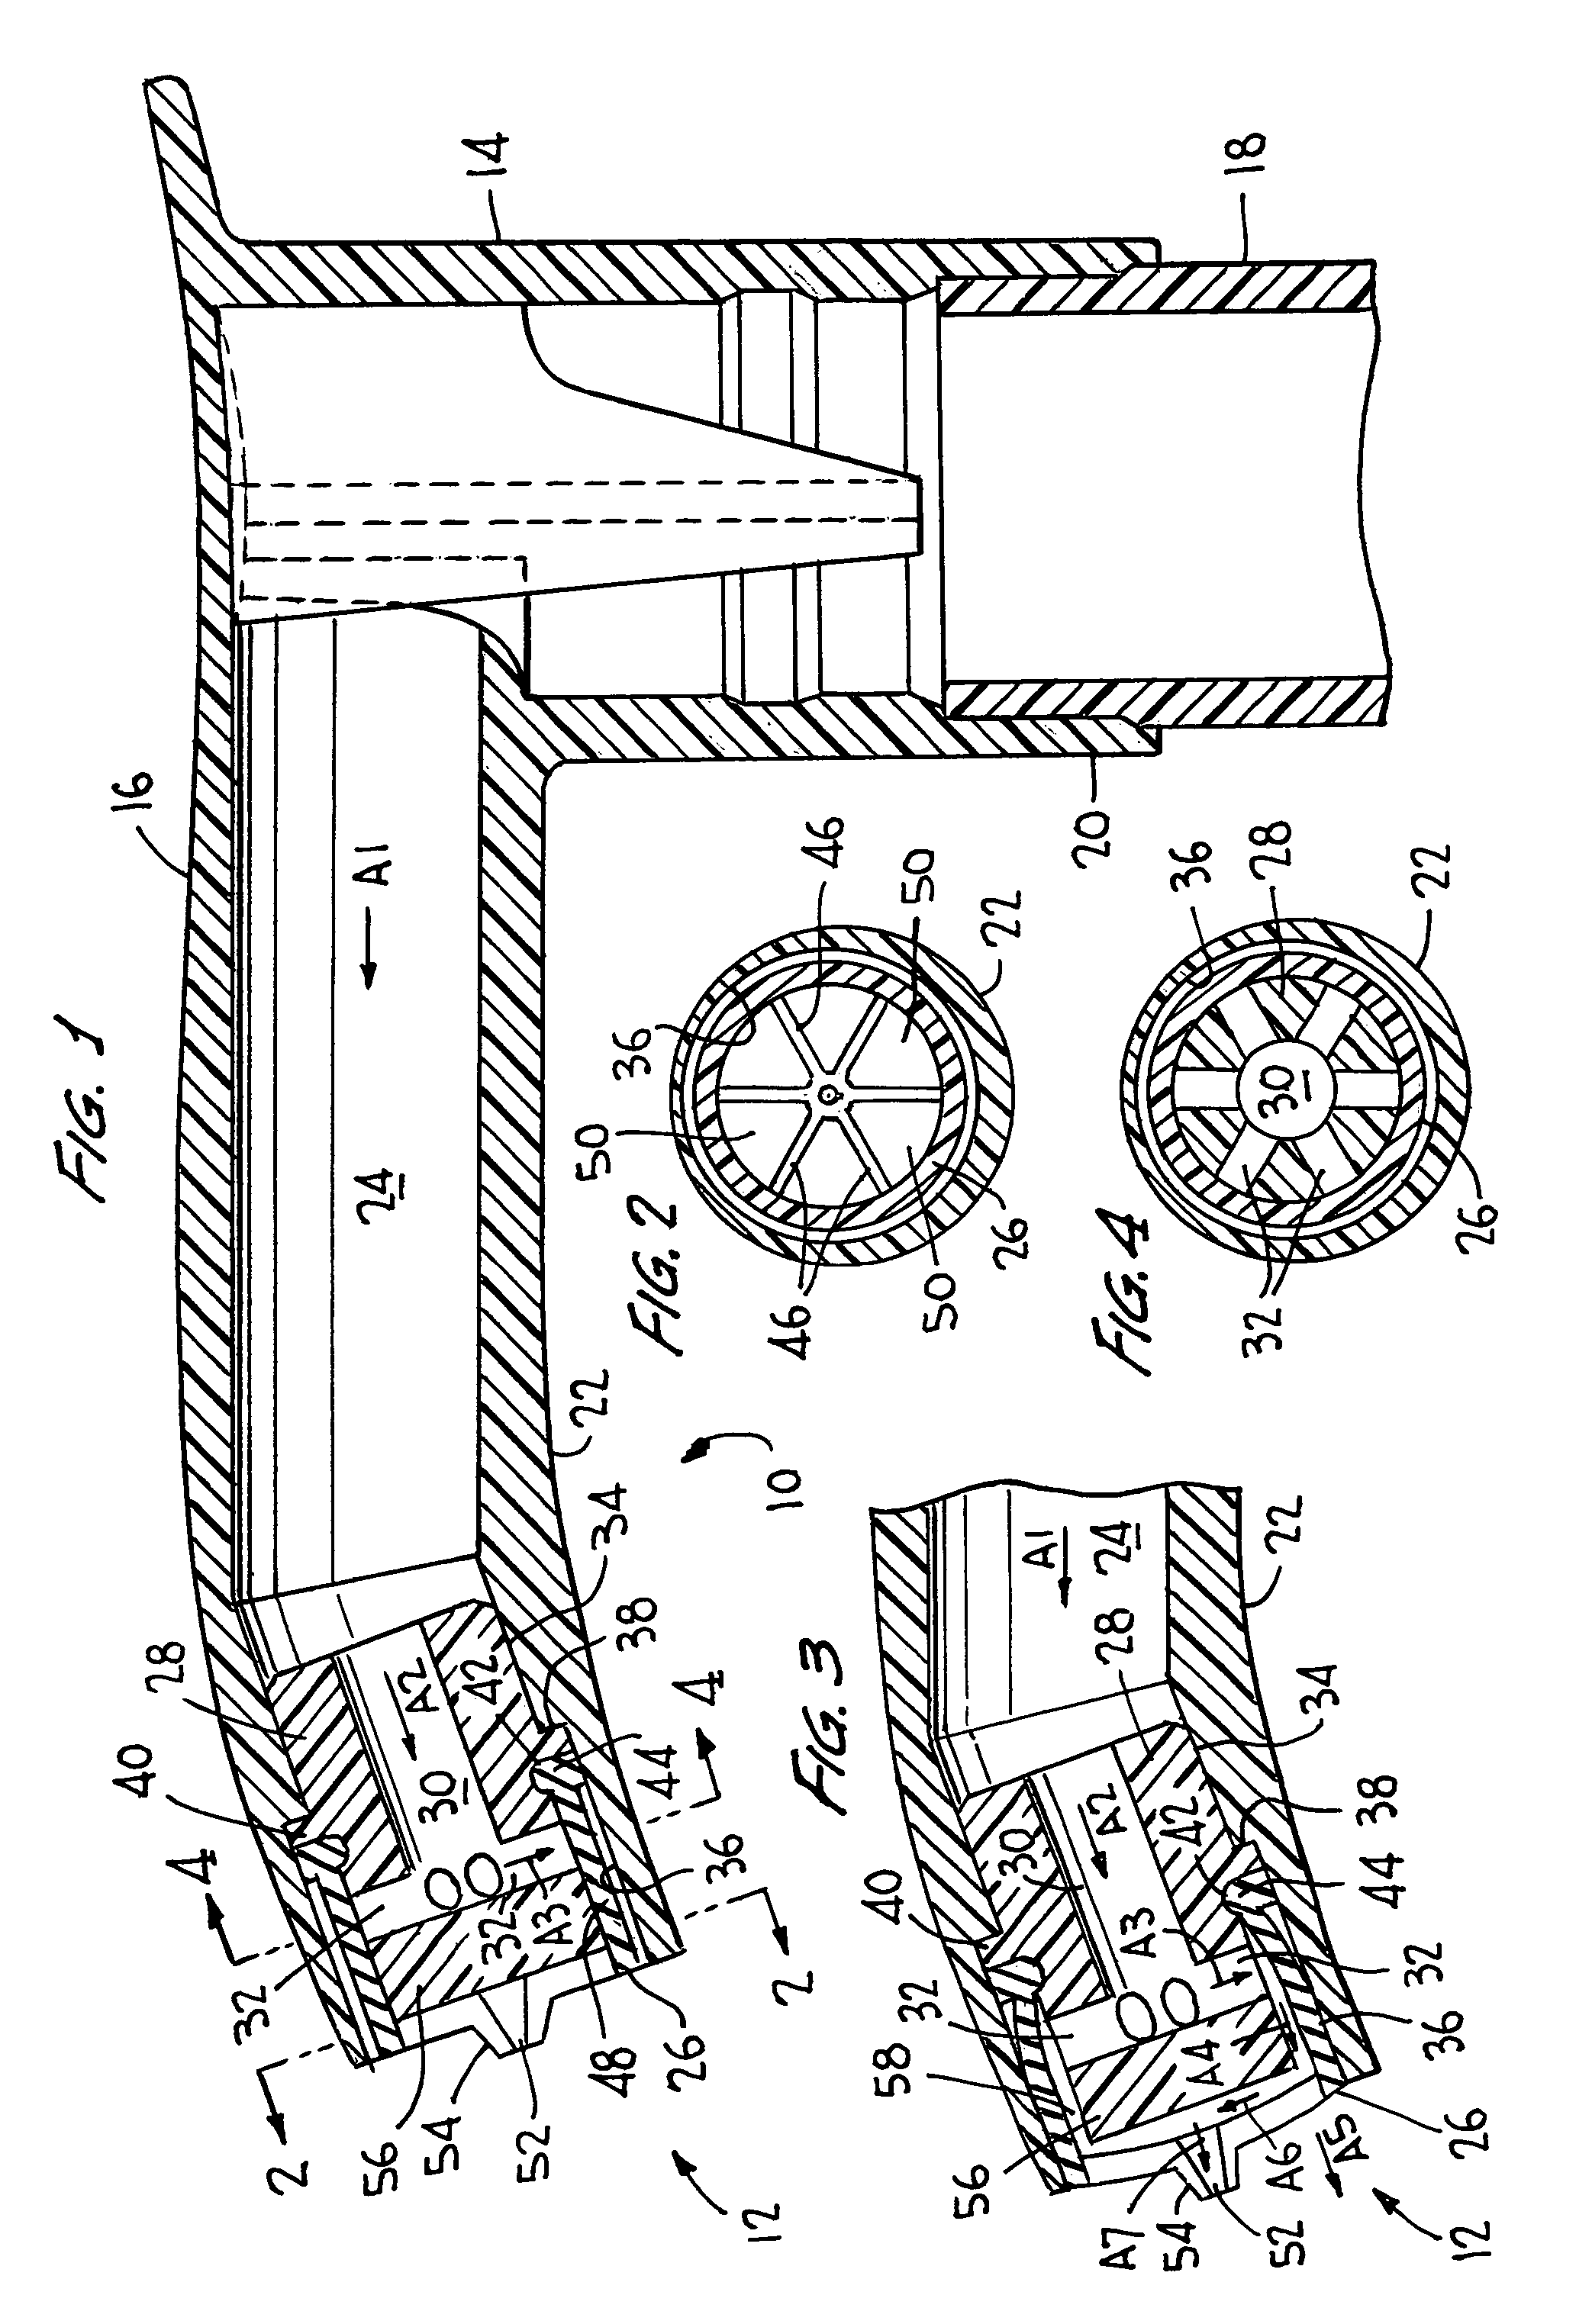 Dispenser having elastomer discharge valve